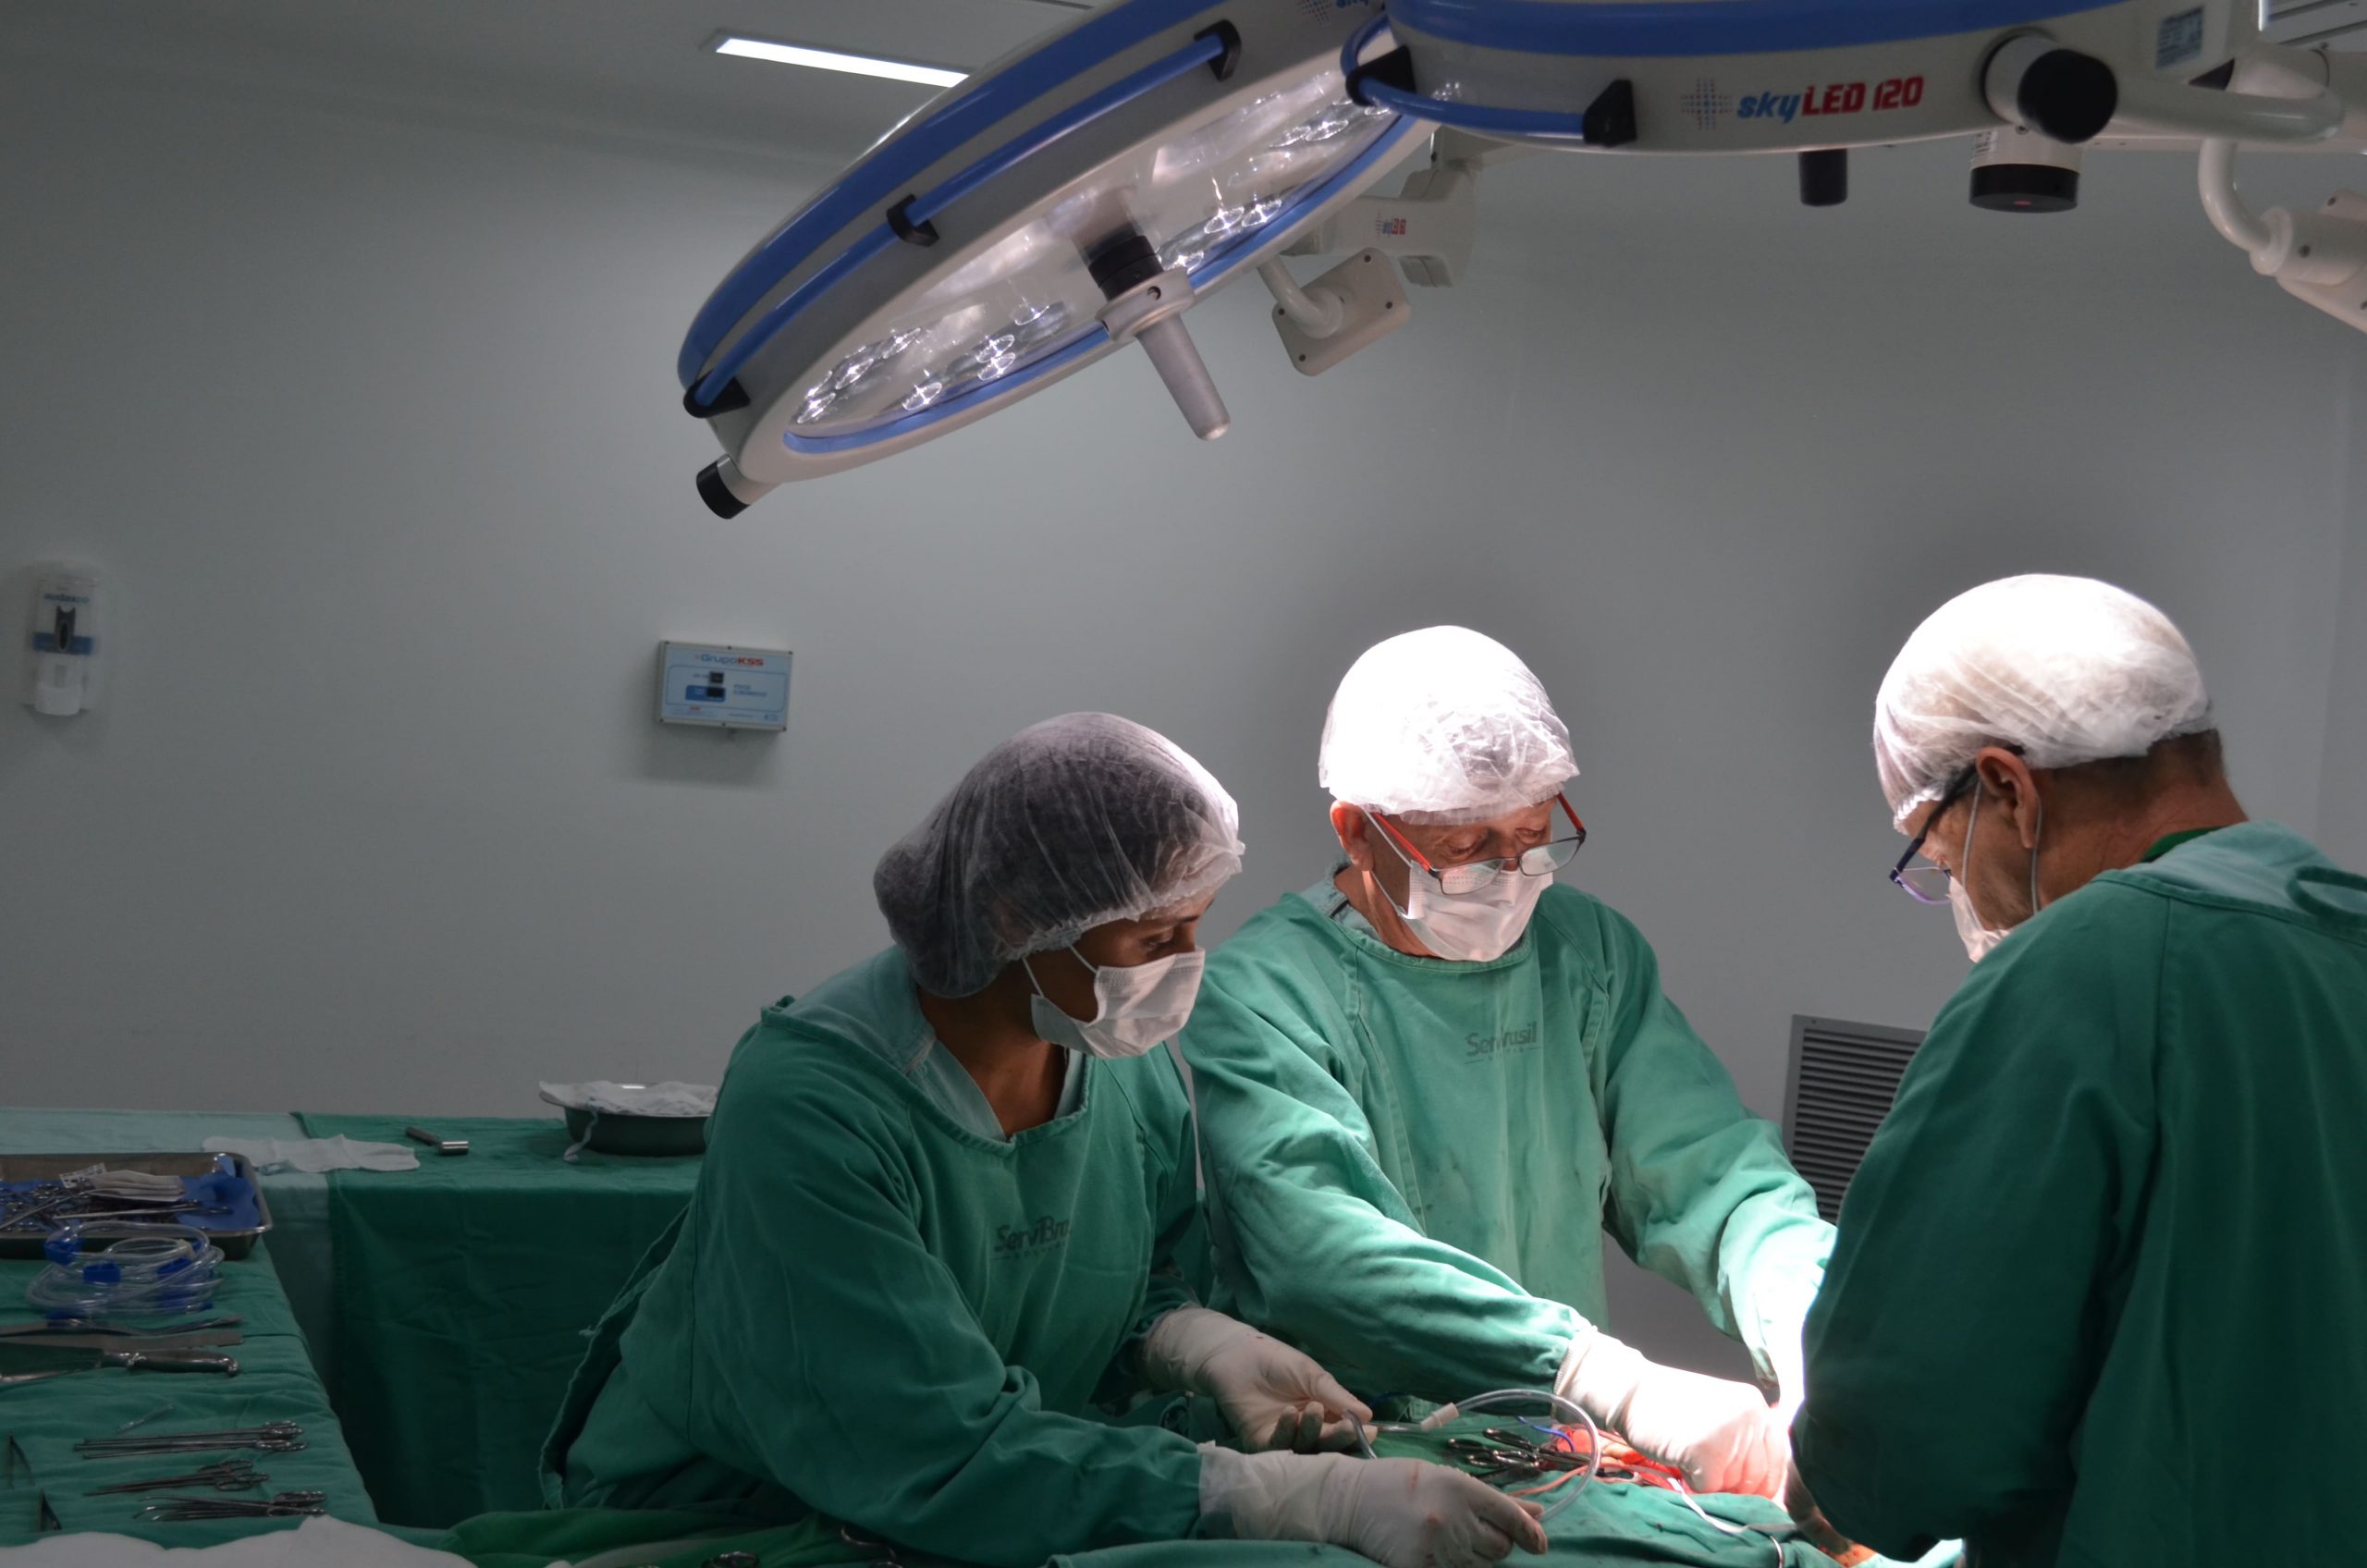 IMED - Instituto de Medicina, Estudos e Desenvolvimento | HCN - Hospital Estadual do Centro-Norte Goiano | Captação de órgãos para transplantes